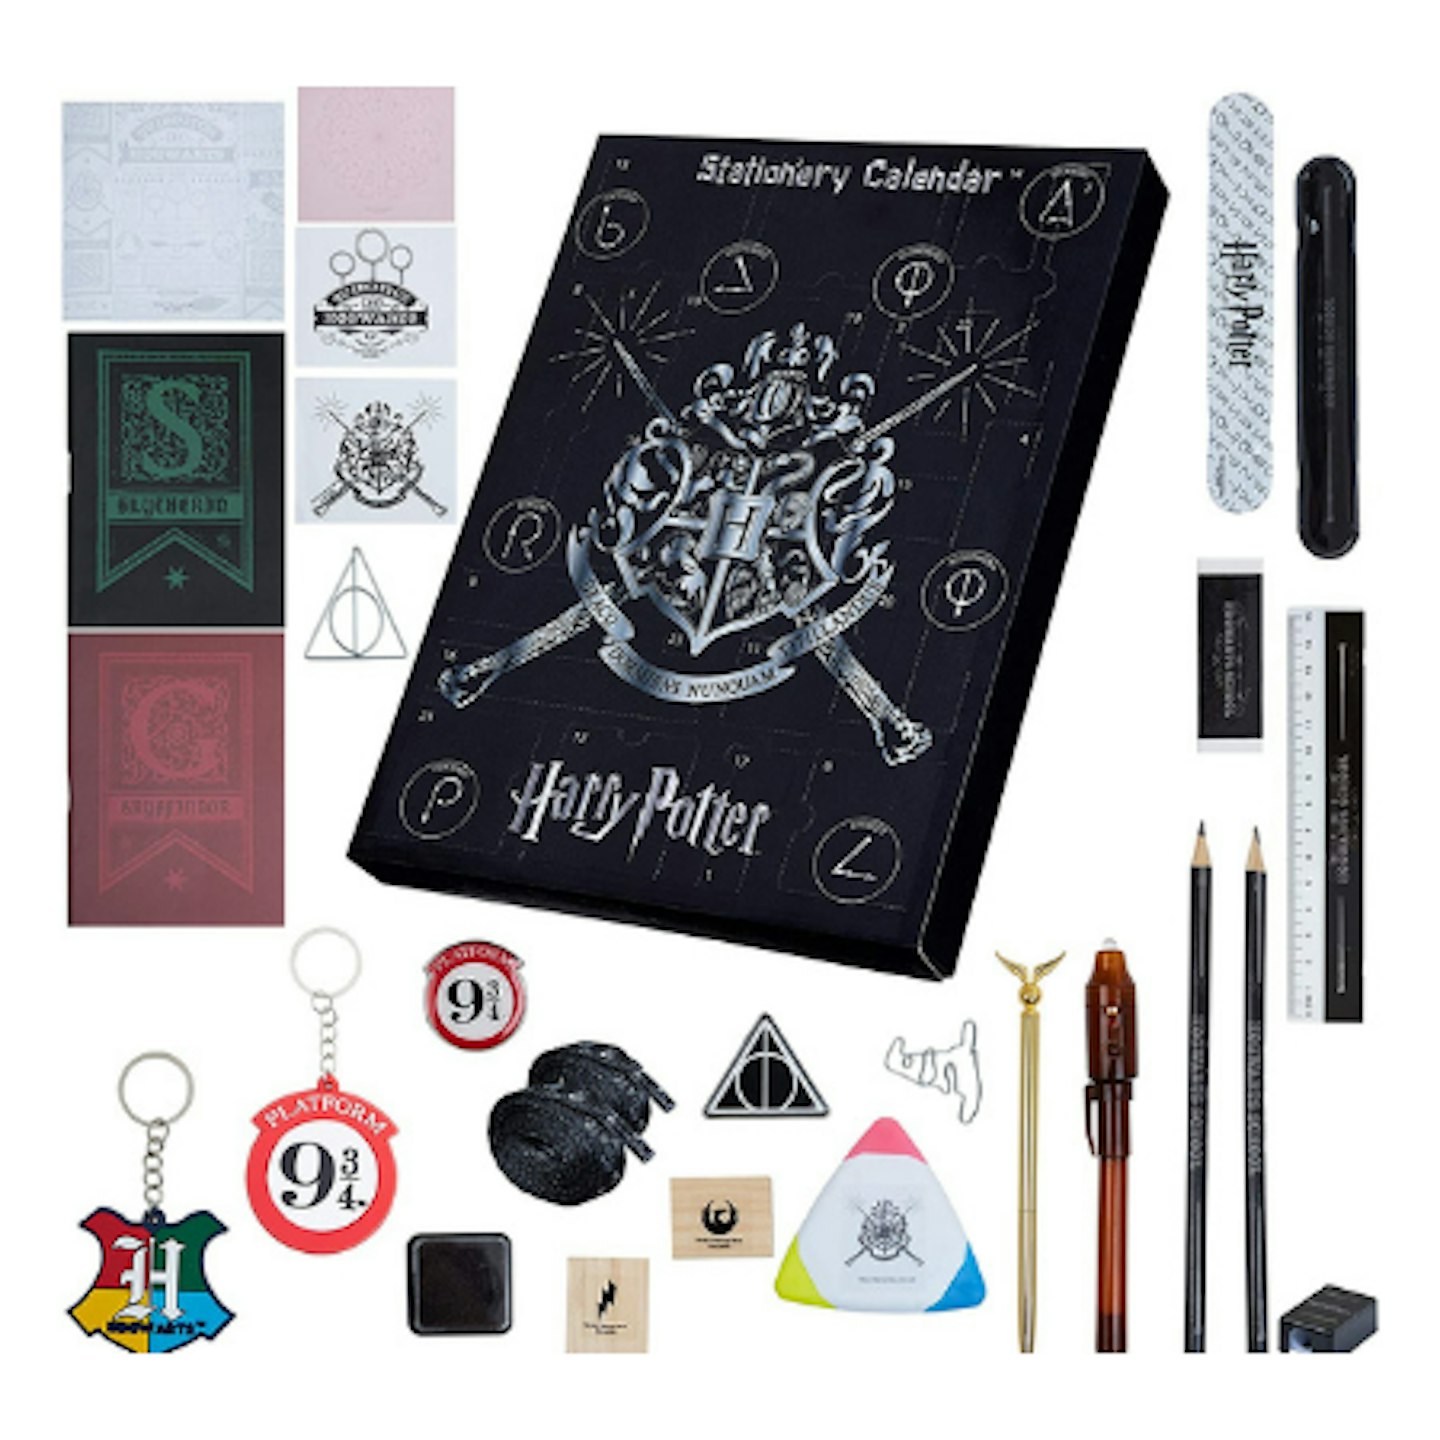 Harry Potter stationery advent calendar